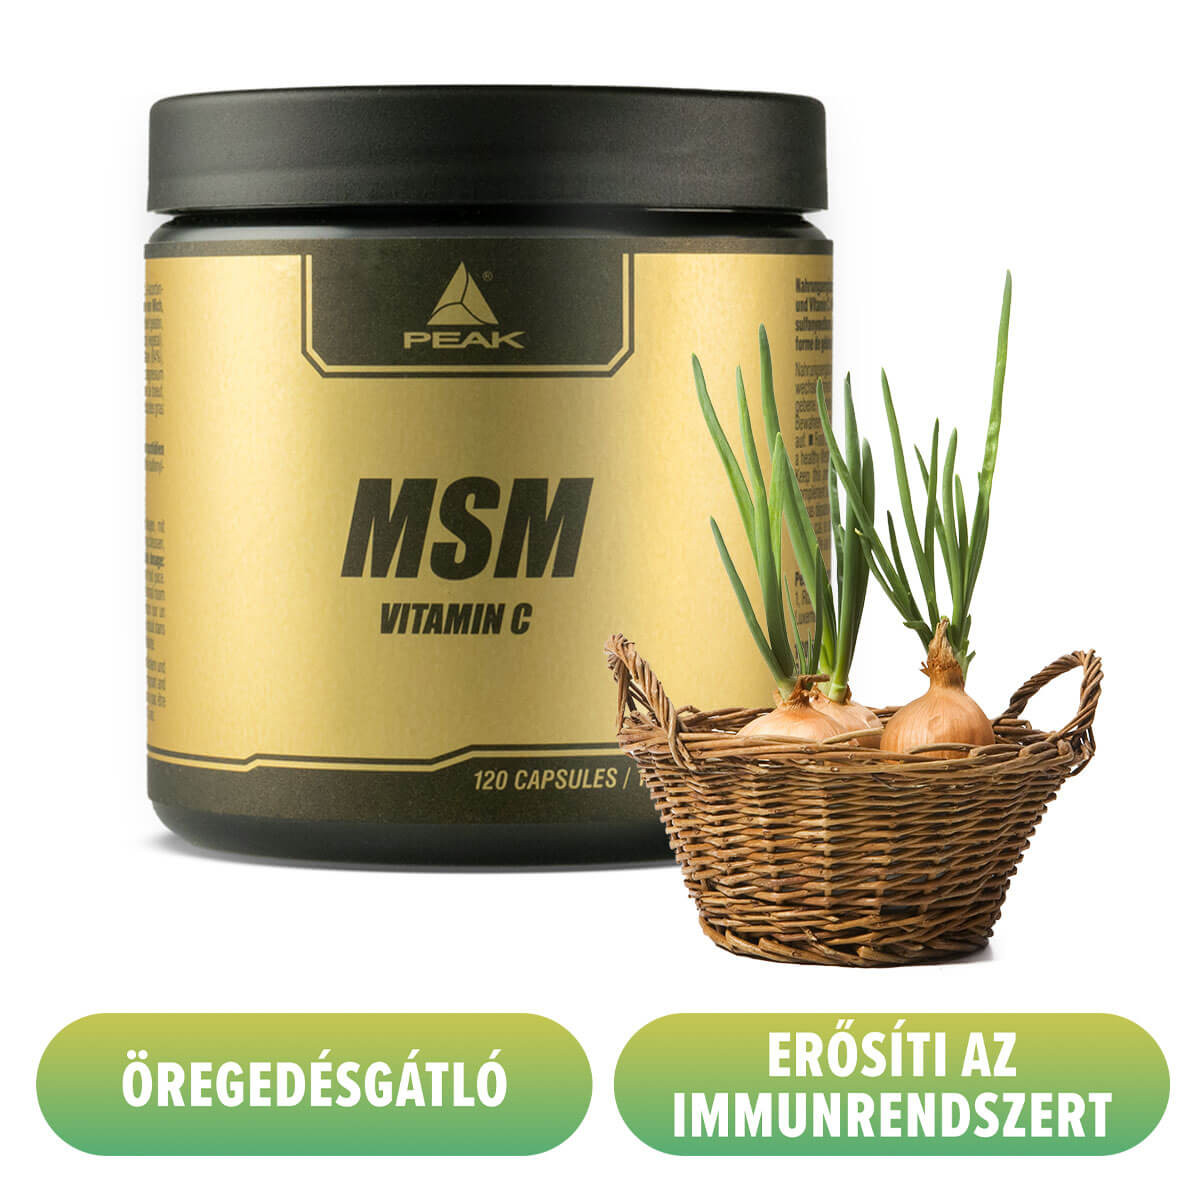 Body Merry Organic Retinol hidratáló - nagy (100ml) öregedésgátló / ráncok és pattanásos krém